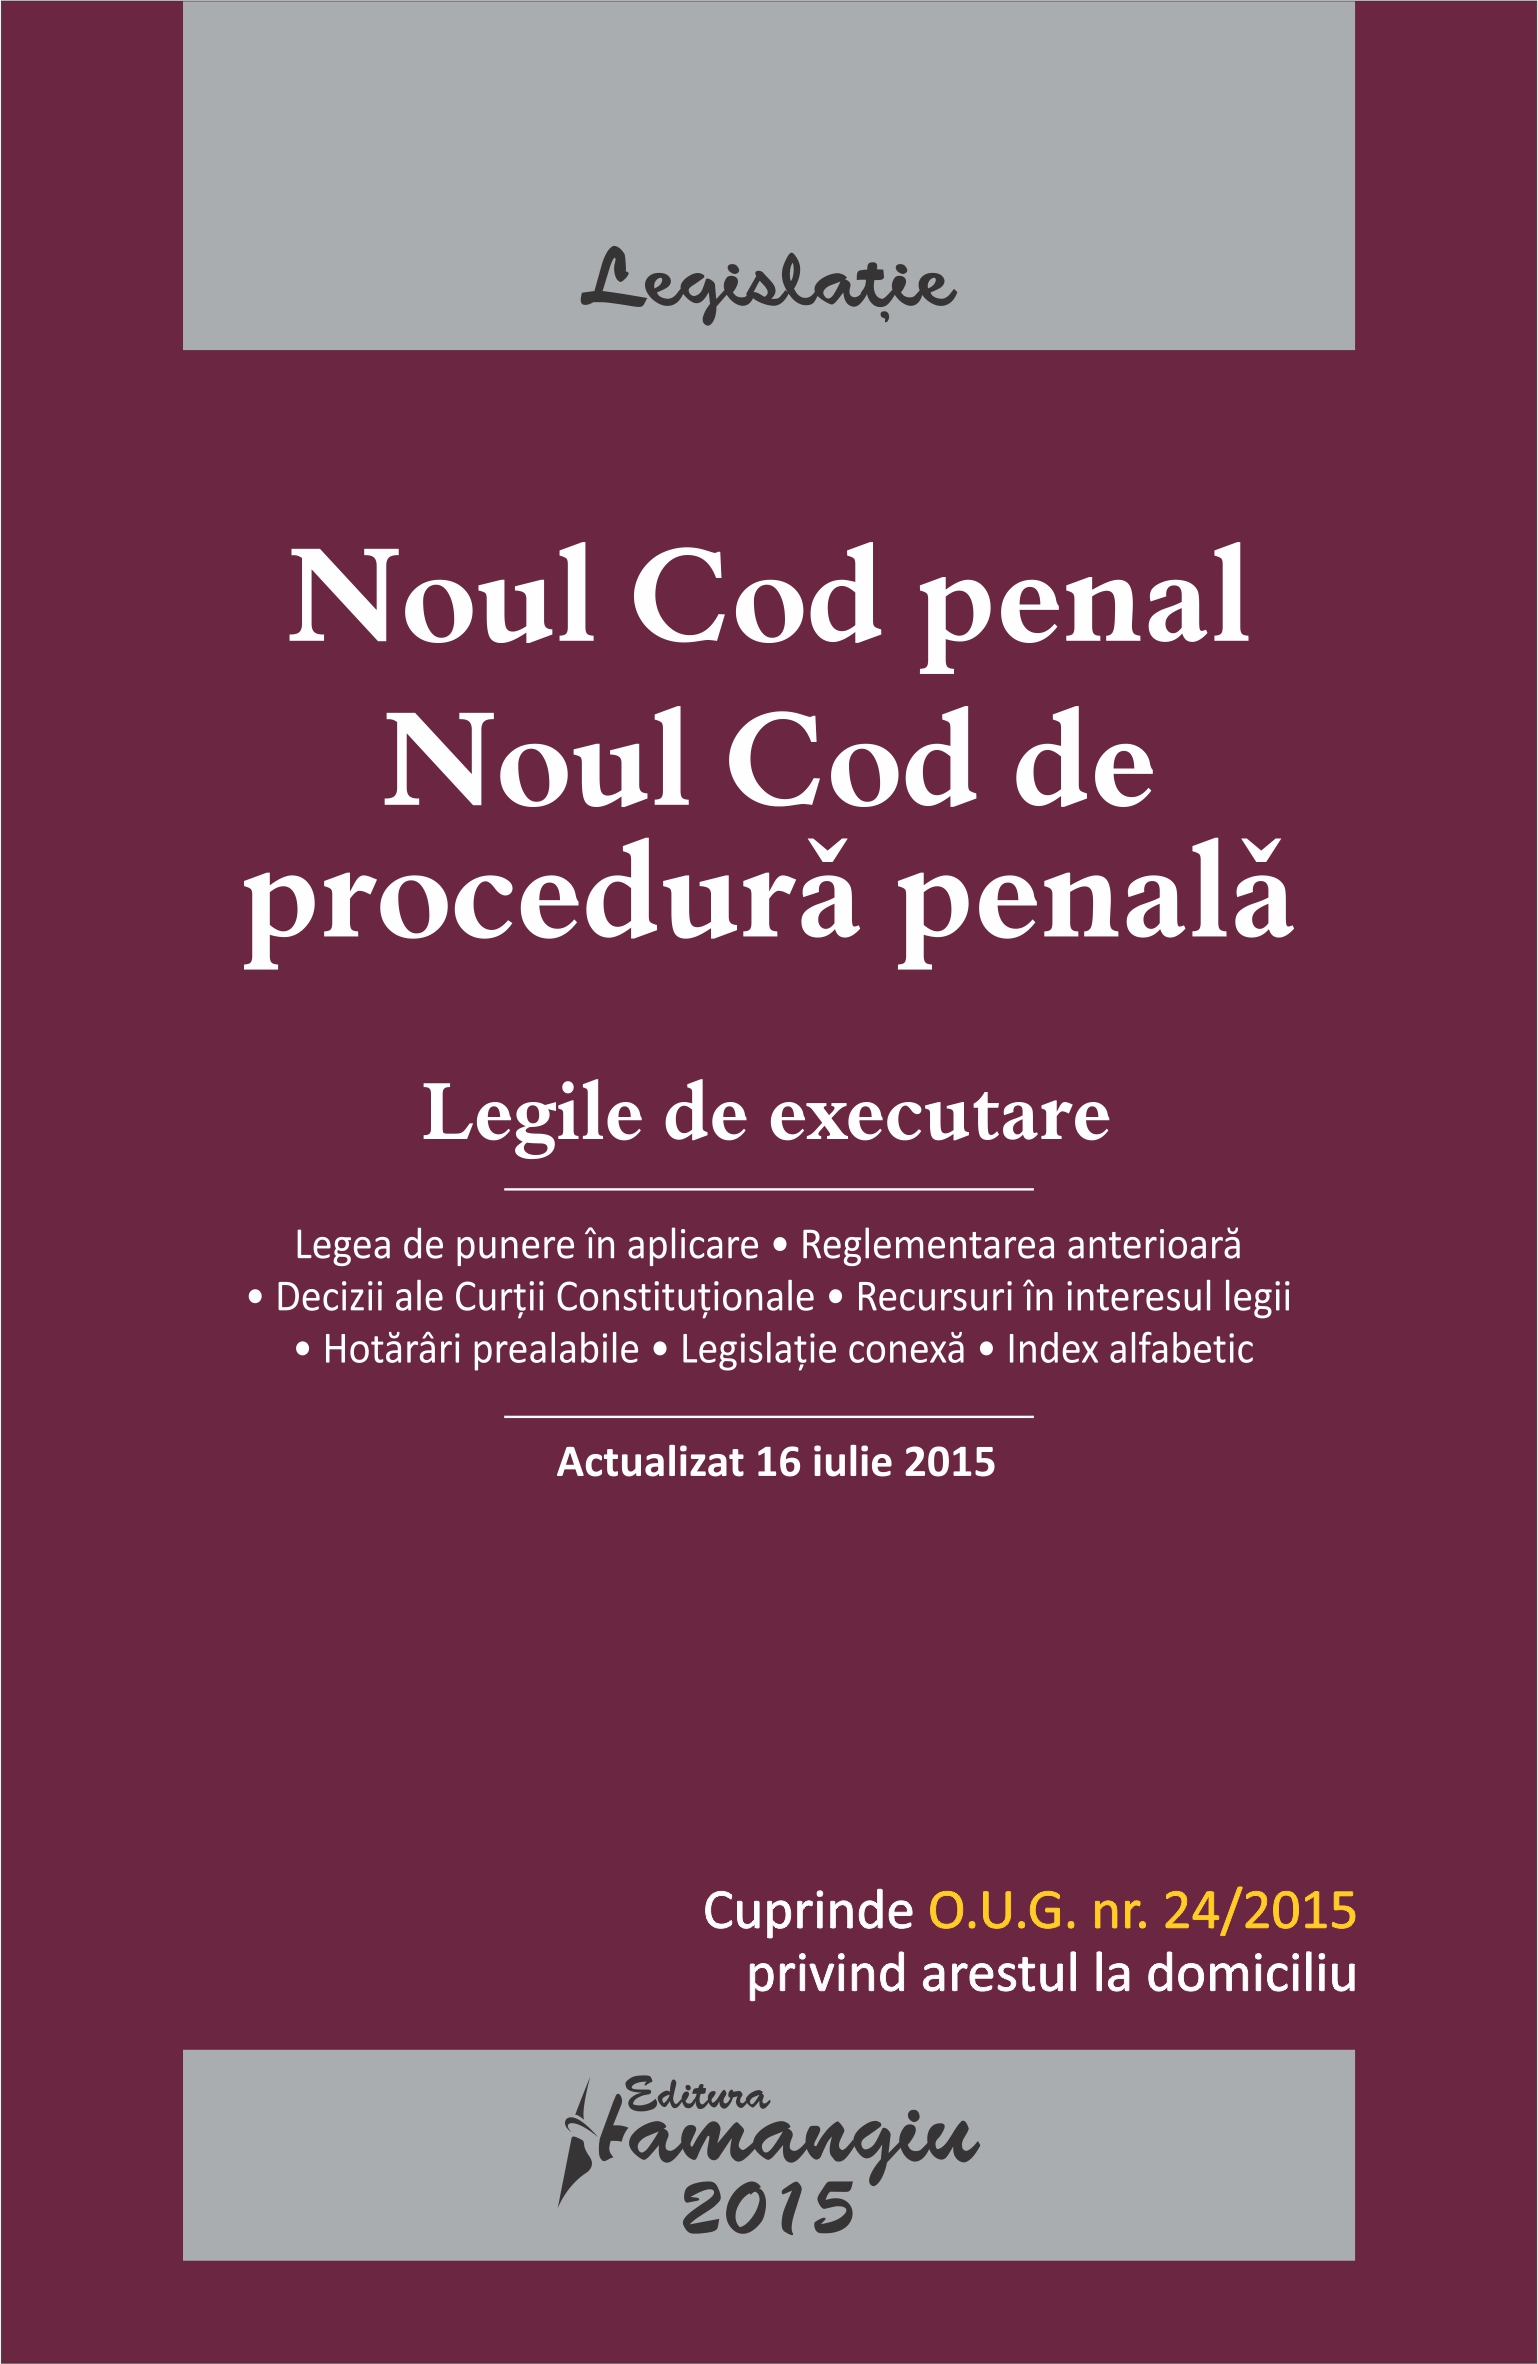 Noul Cod Penal. Noul Cod De Procedura Penala. Legile De Executare Act. 16 Iulie 2015